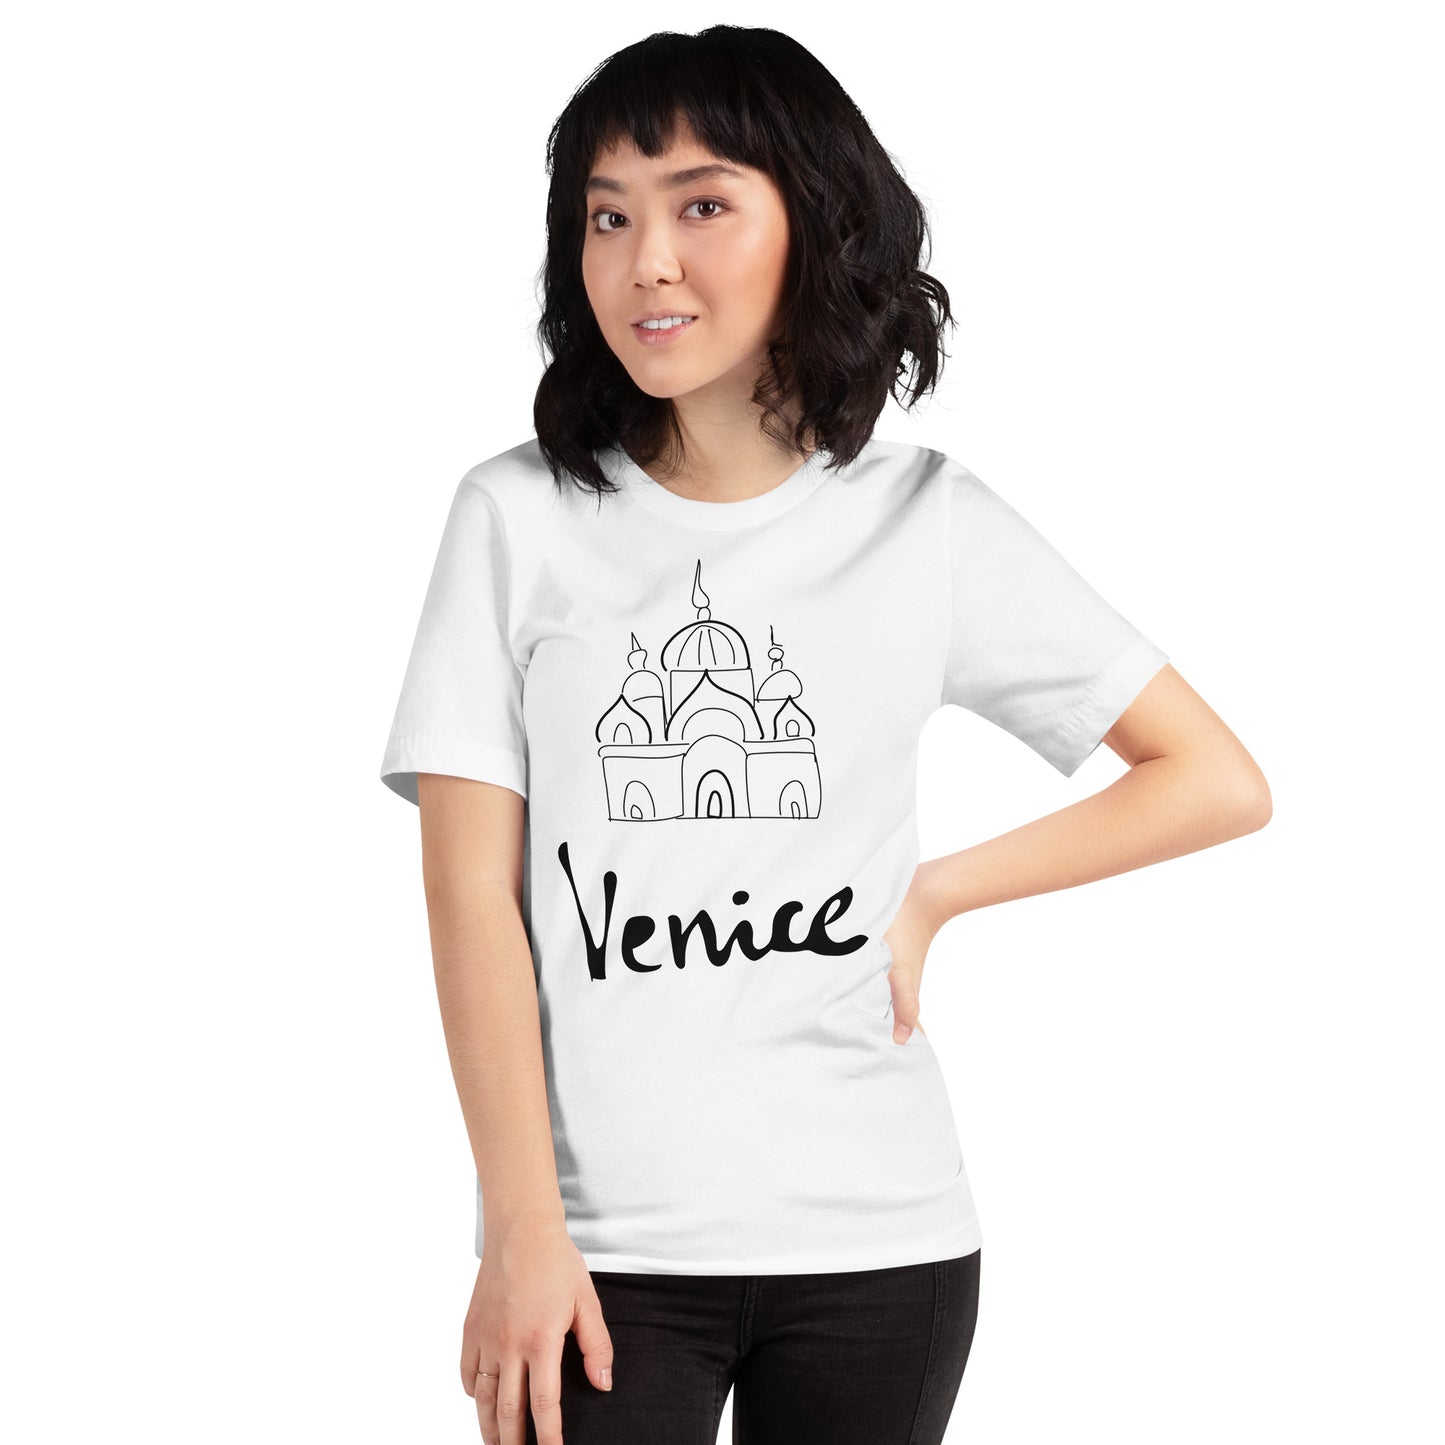 Unisex t-shirt - Venice Architecture